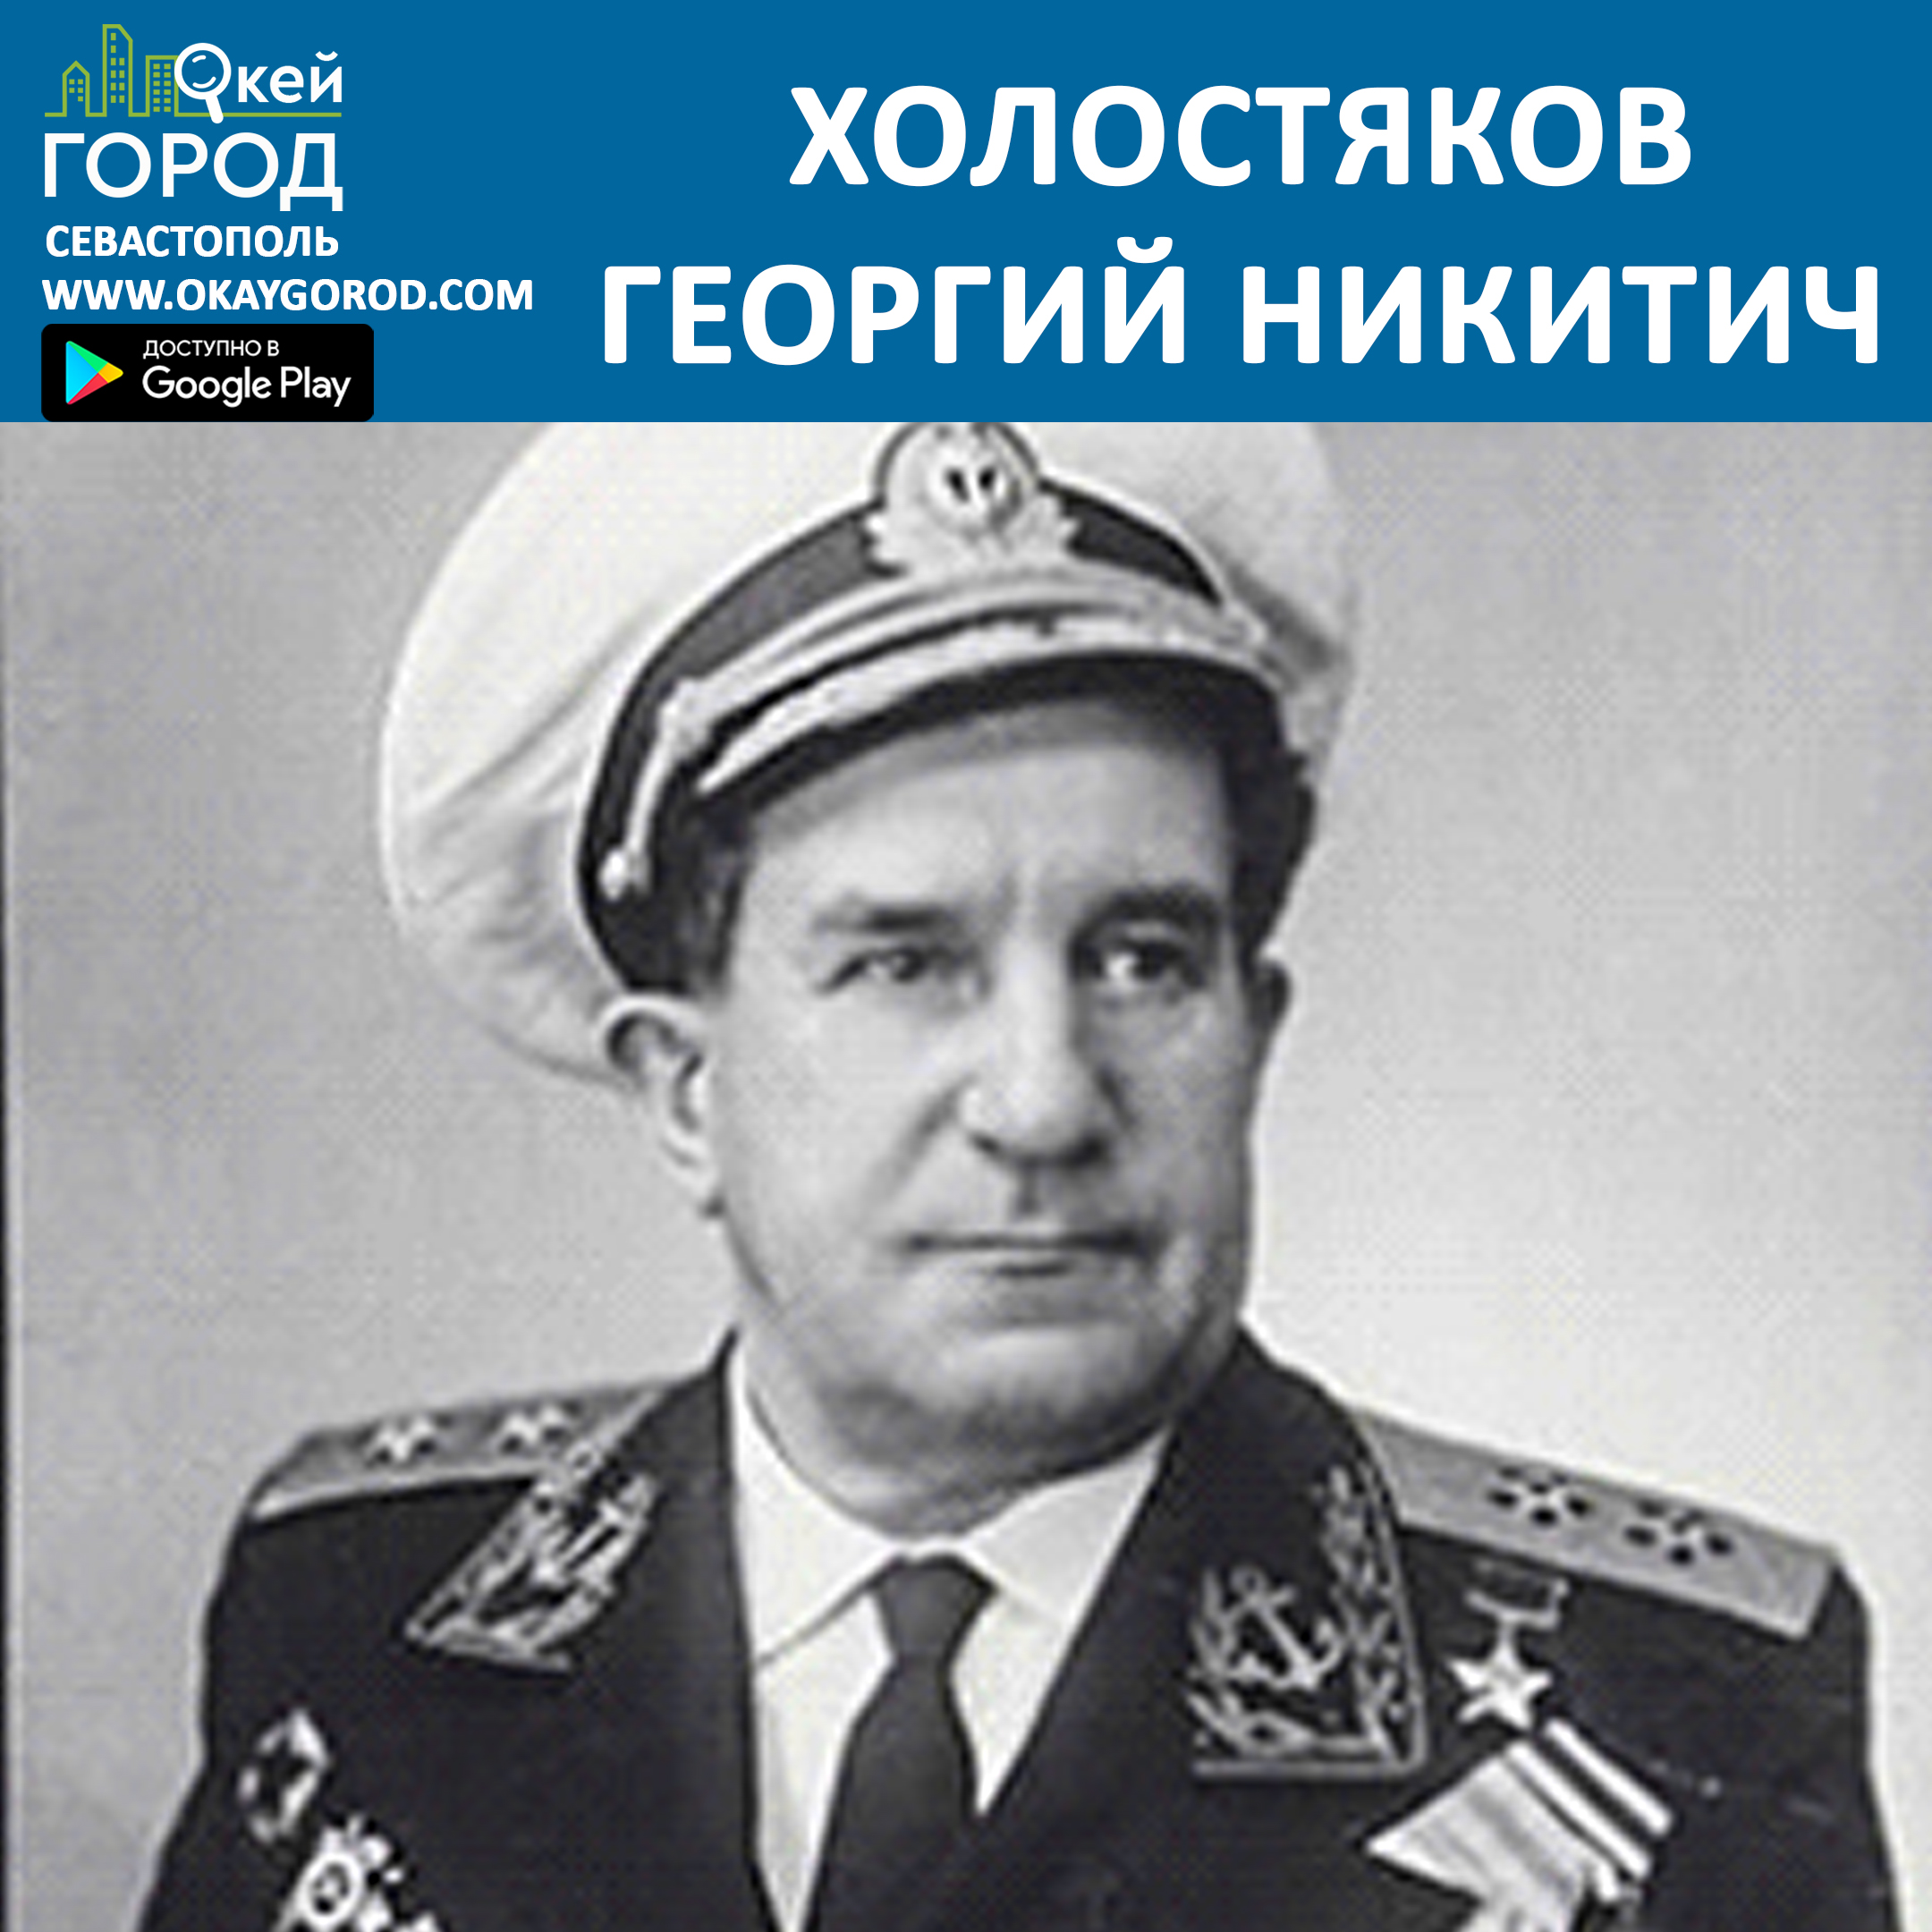 Холостяков Георгий Никитич герой советского